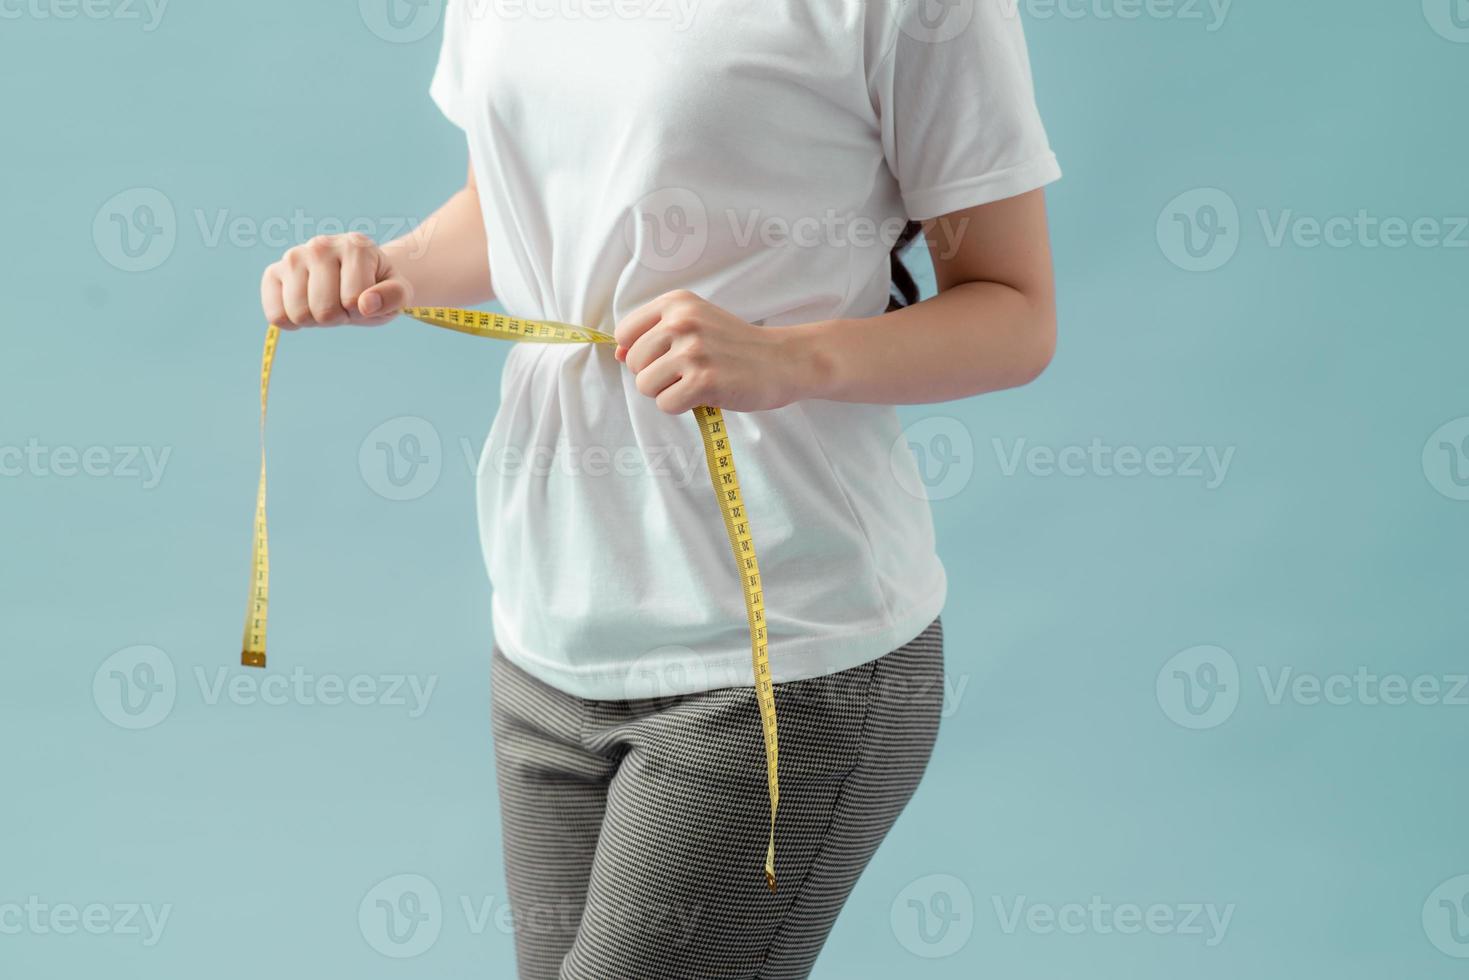 vrouwen gezonde lichaamsverzorging gewichtscontrole taille vet meten met behulp van meetlint of meetlint. foto